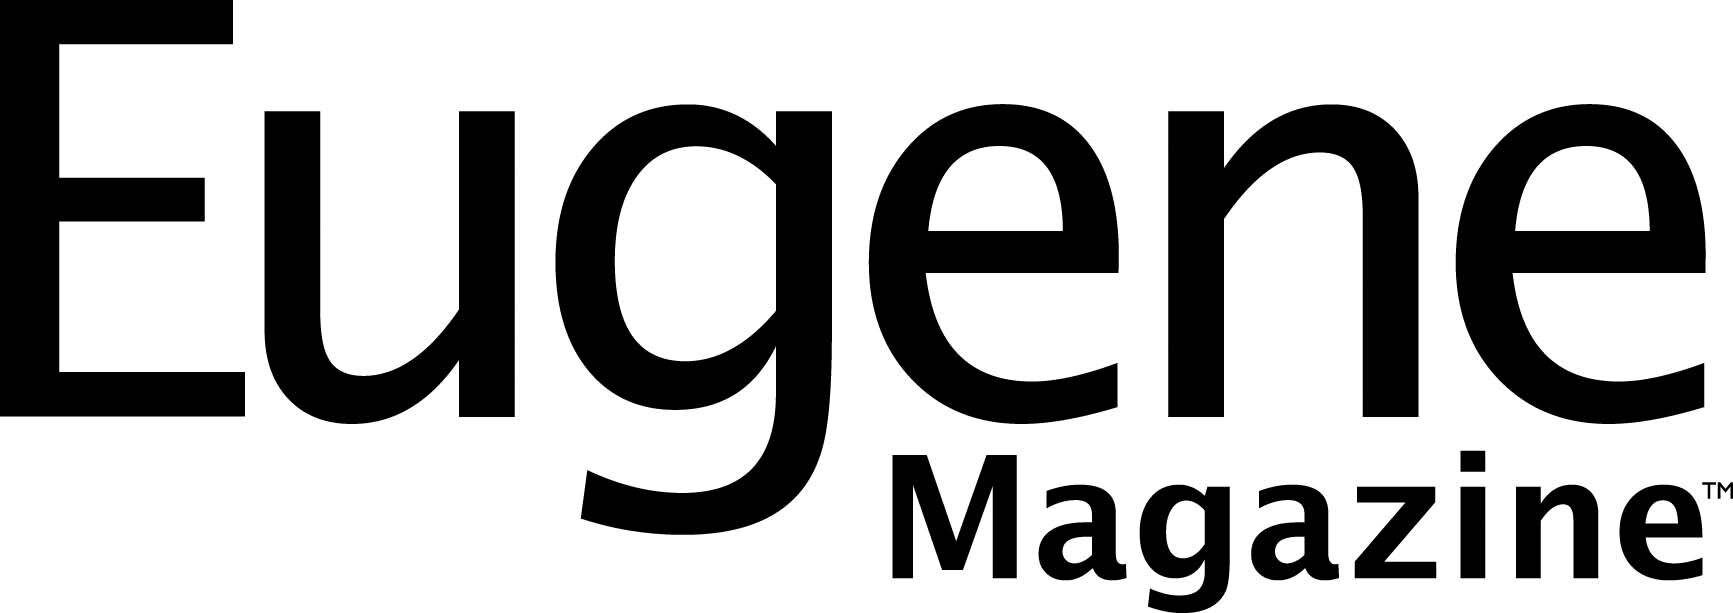 Eugene Magazine Logo.jpg